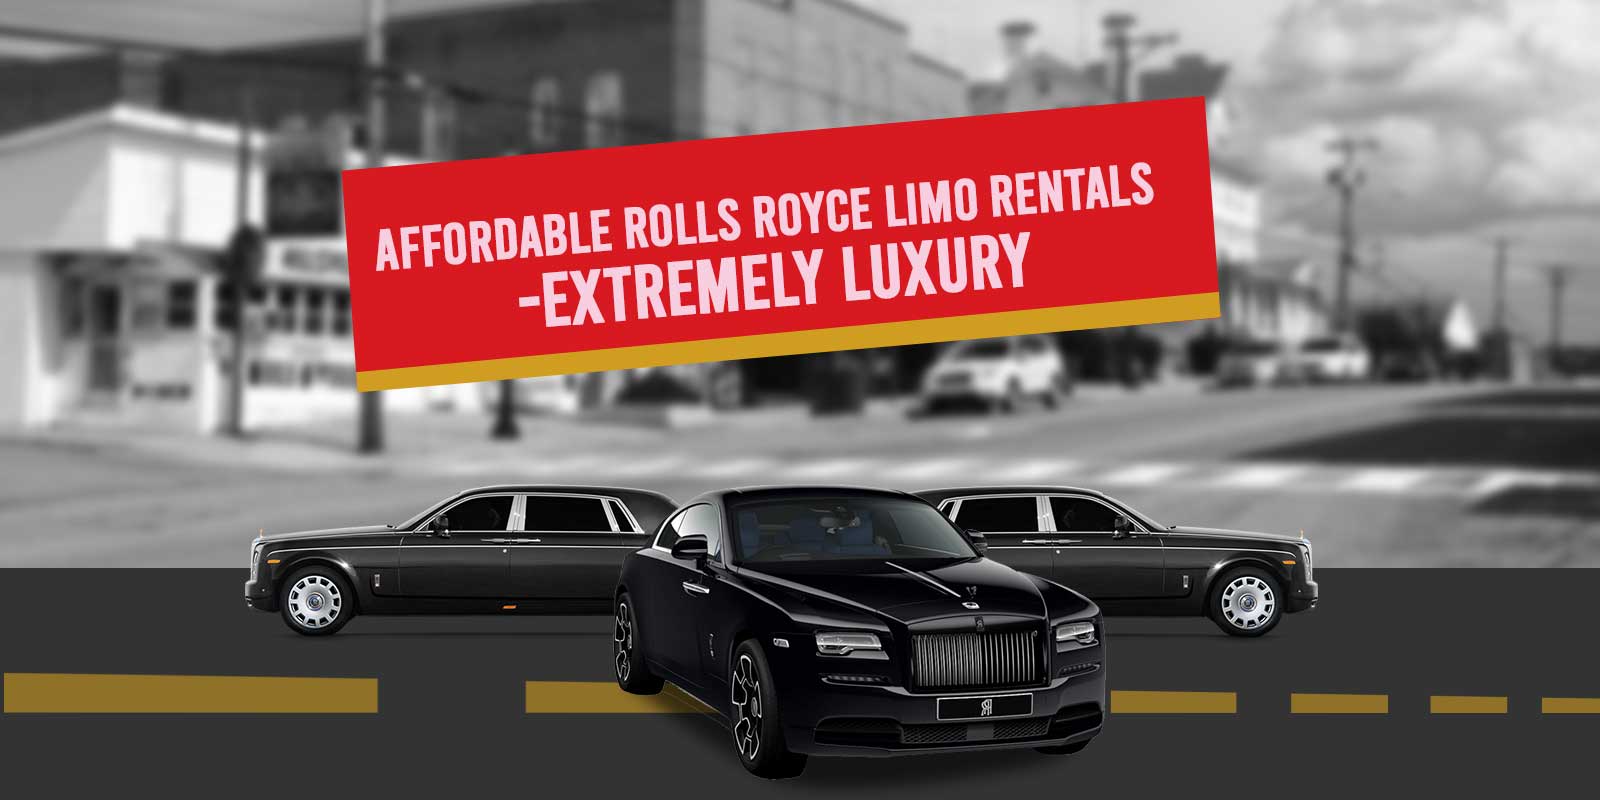 Rolls Royce Limo Rentals